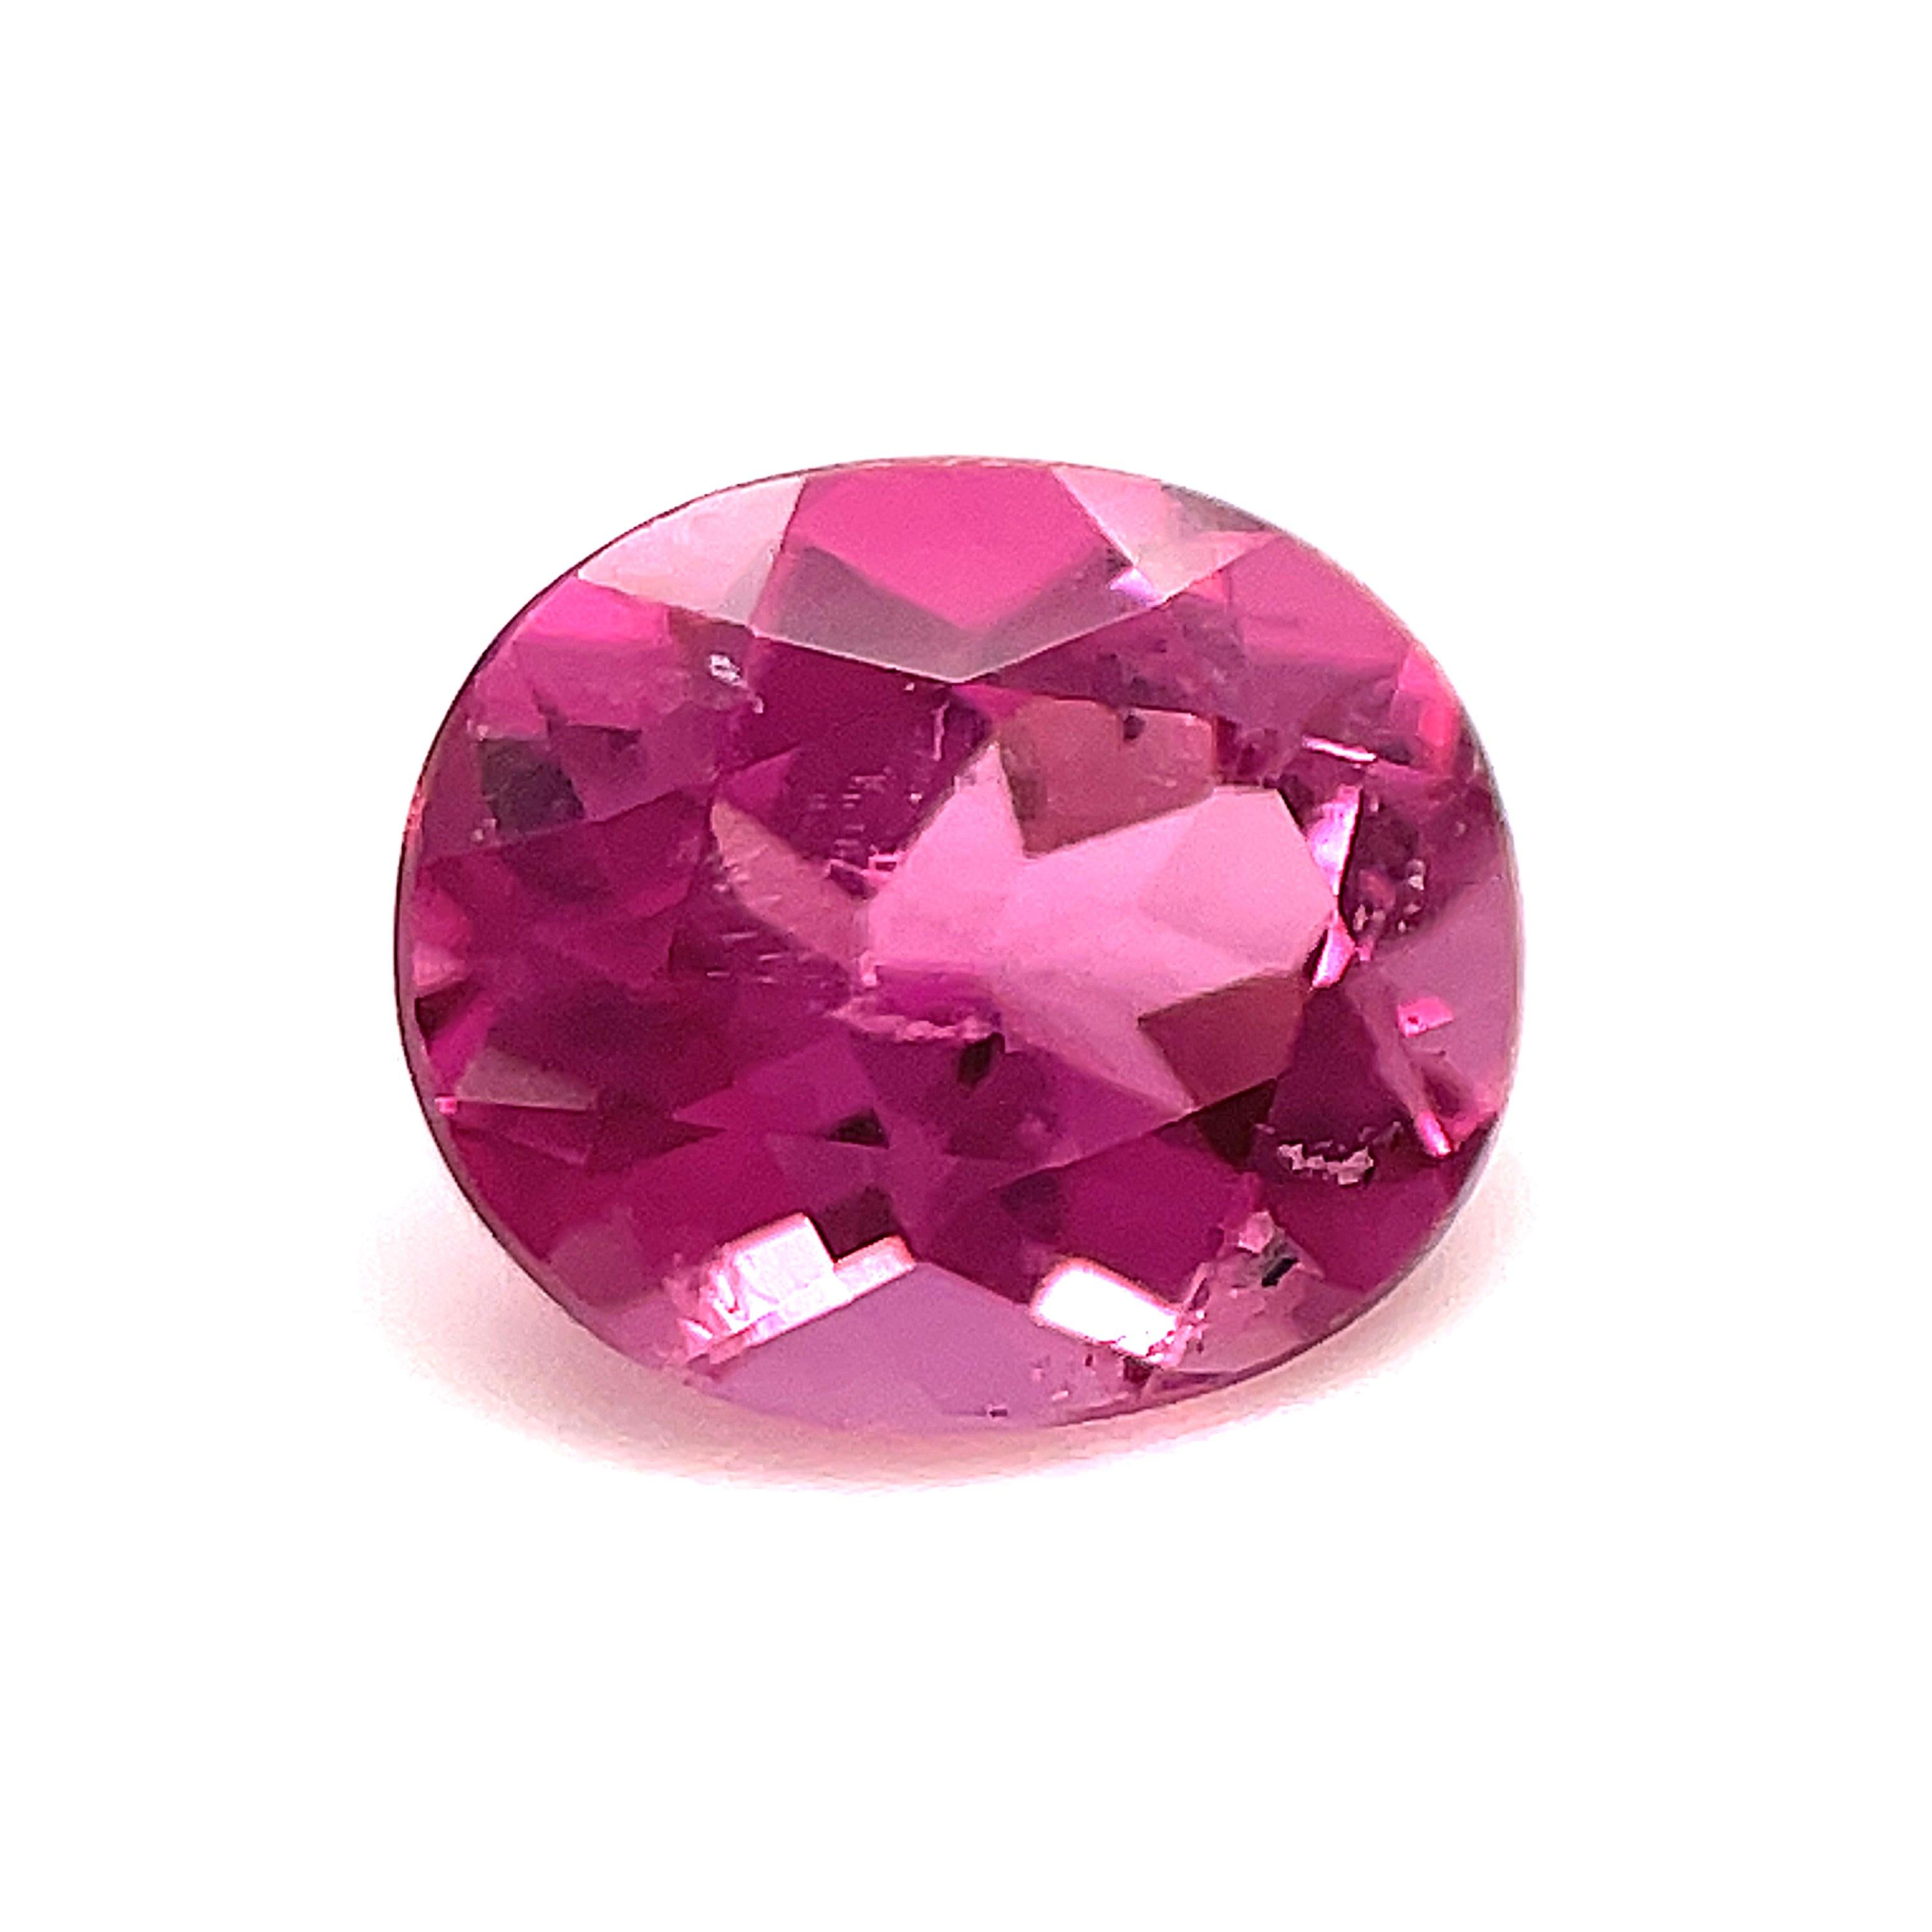 loose pink gemstones